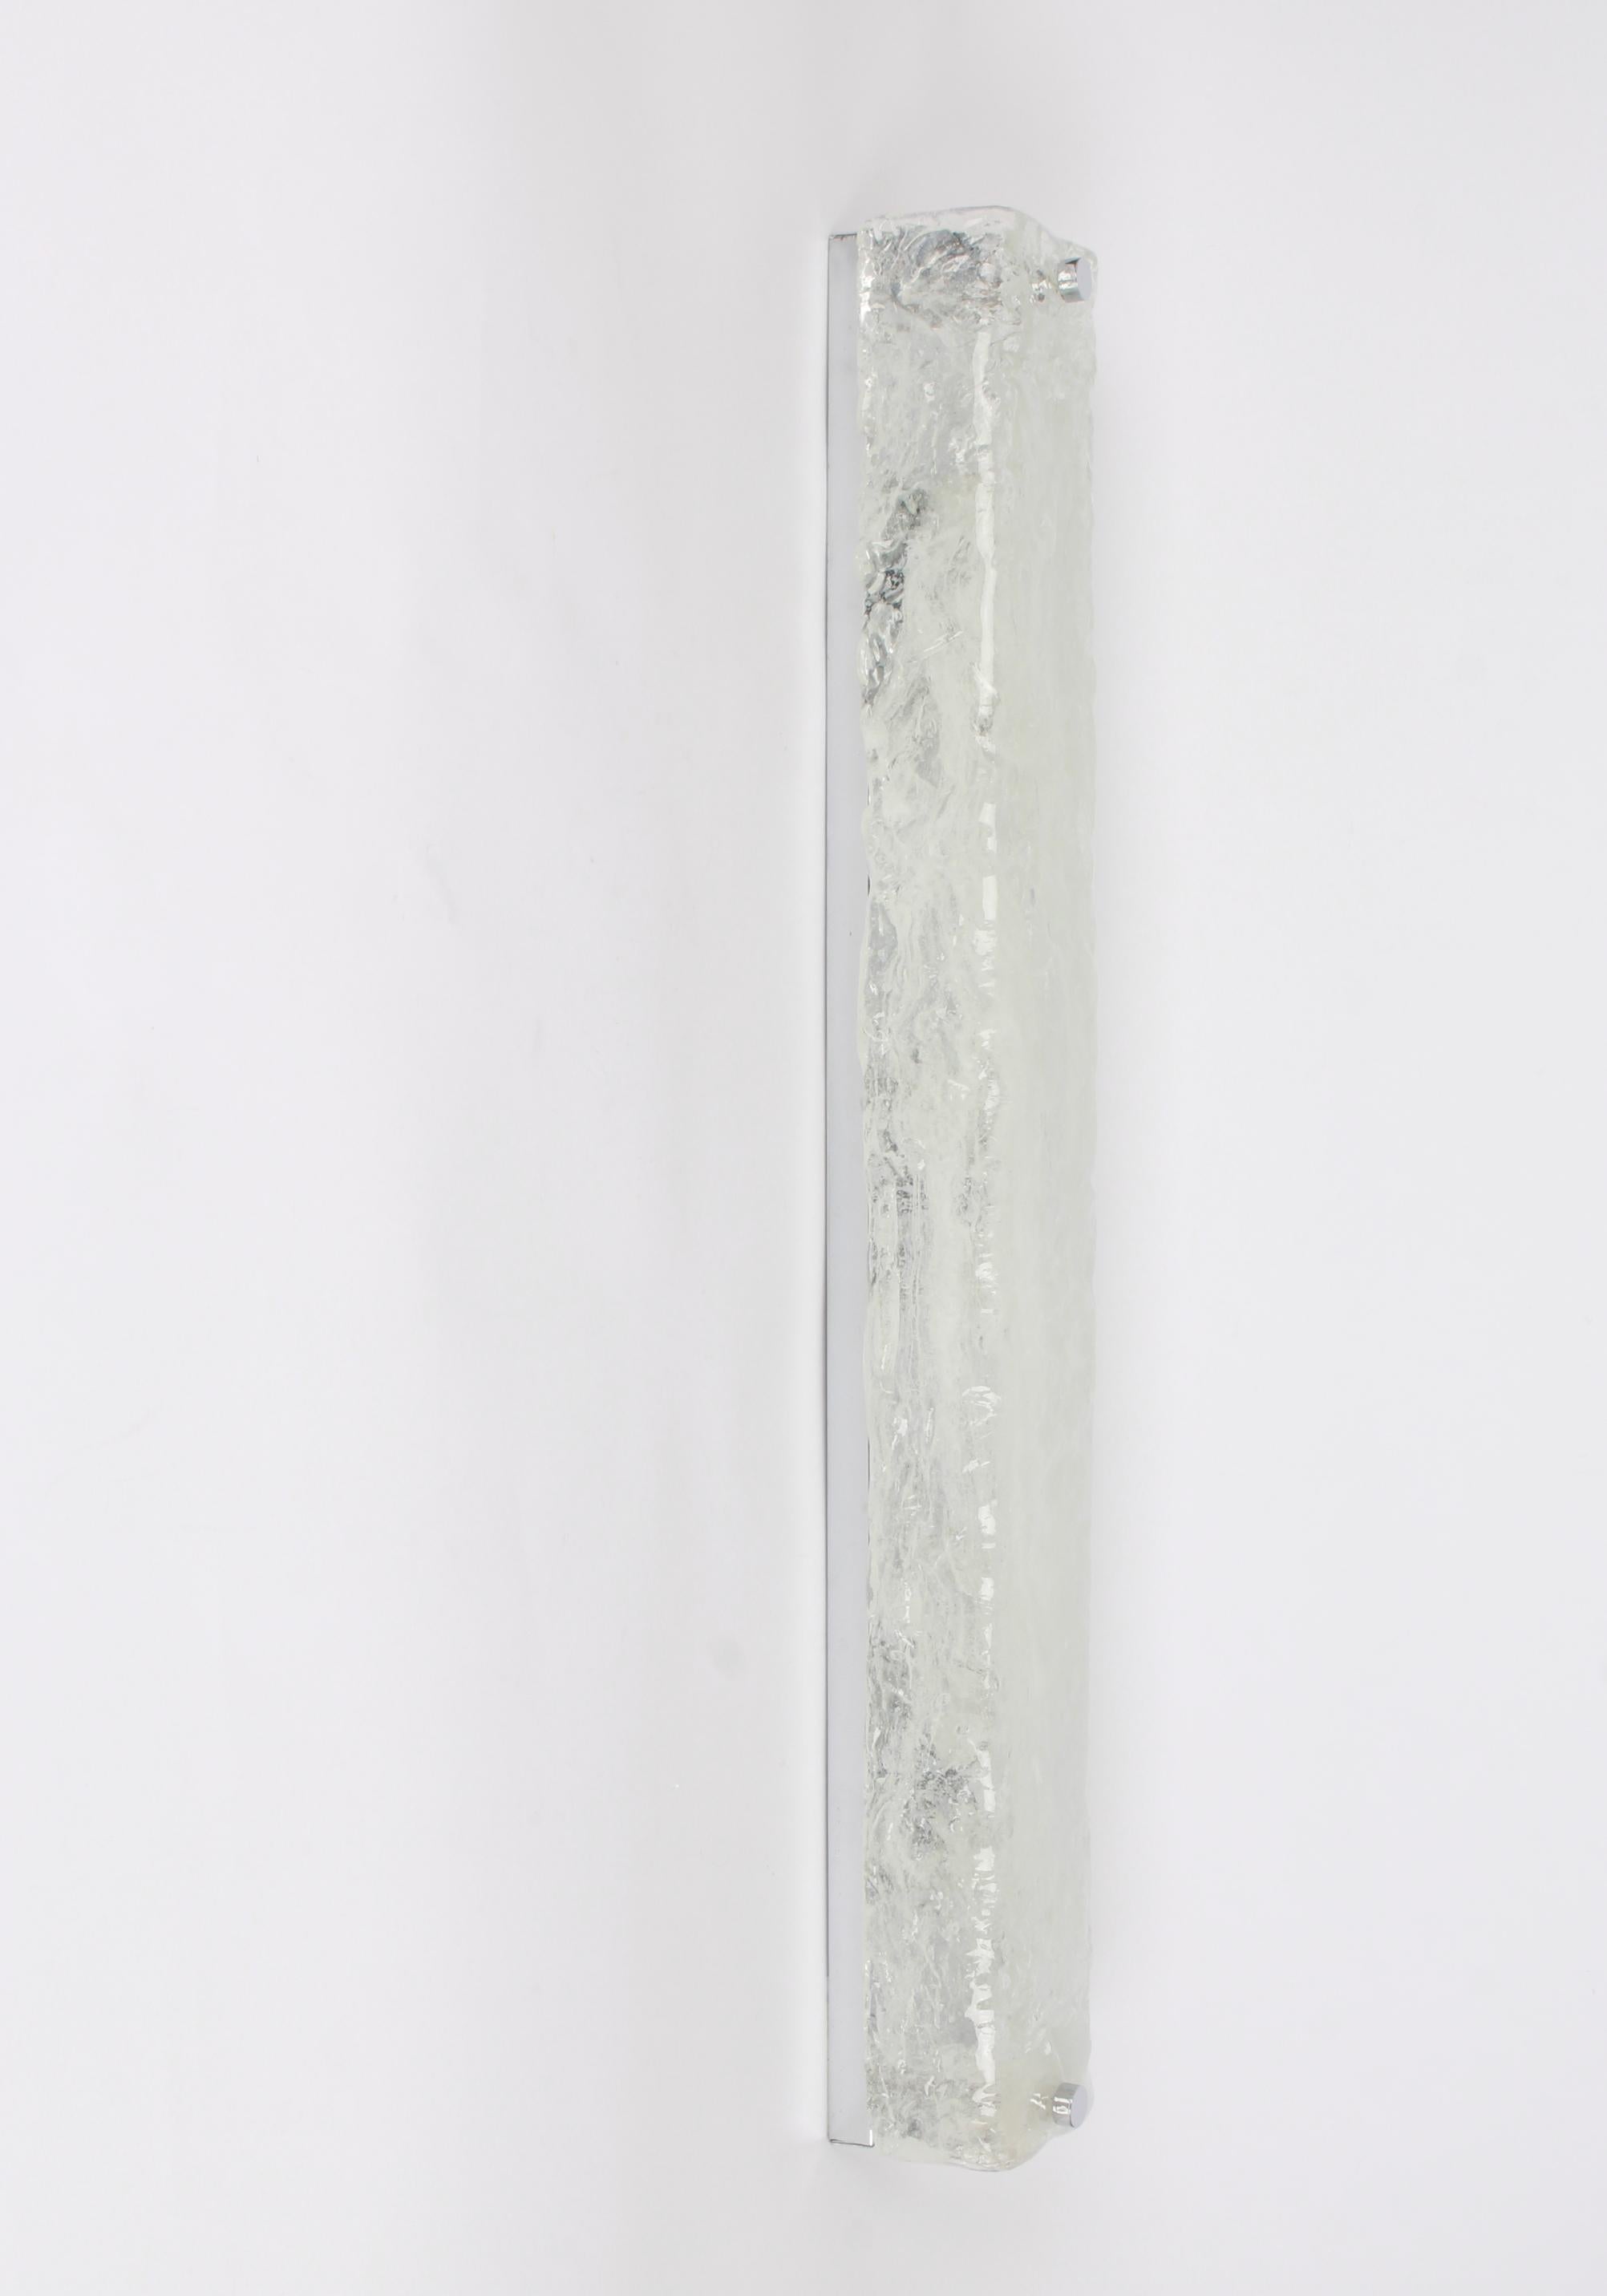 1 de 2 grandes appliques carrées en verre de Murano faites à la main sur une base chromée par Hillebrand, Allemagne, vers les années 1960.

Il se compose d'un abat-jour carré en cristal clair de qualité texturée simulant la glace sur un cadre